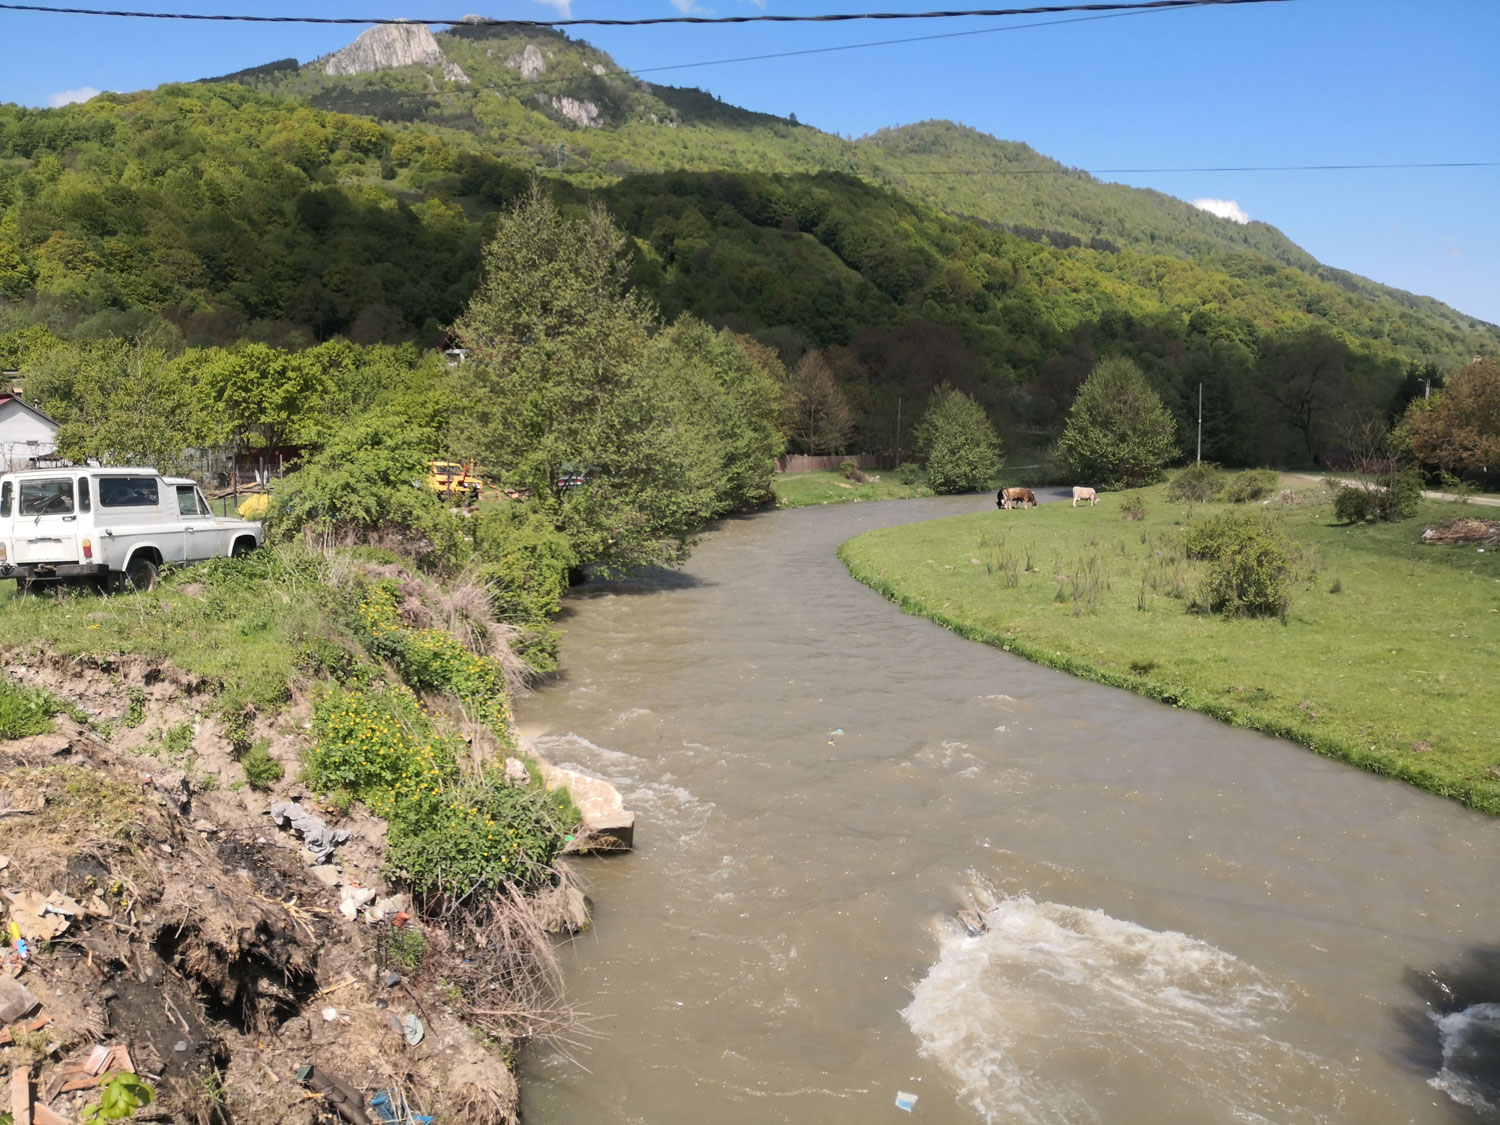 La Dâmbovița 150 km en amont, dans les Carpates, en bordure d’un village. Ici aussi les villageois ont bien souvent l’habitude d’utiliser une partie de leurs déchets pour « consolider » le lit de la rivière. Une mauvaise habitude alors qu’un barrage se trouve 5 km en amont permettant de prévenir toute crue © Globe Reporters